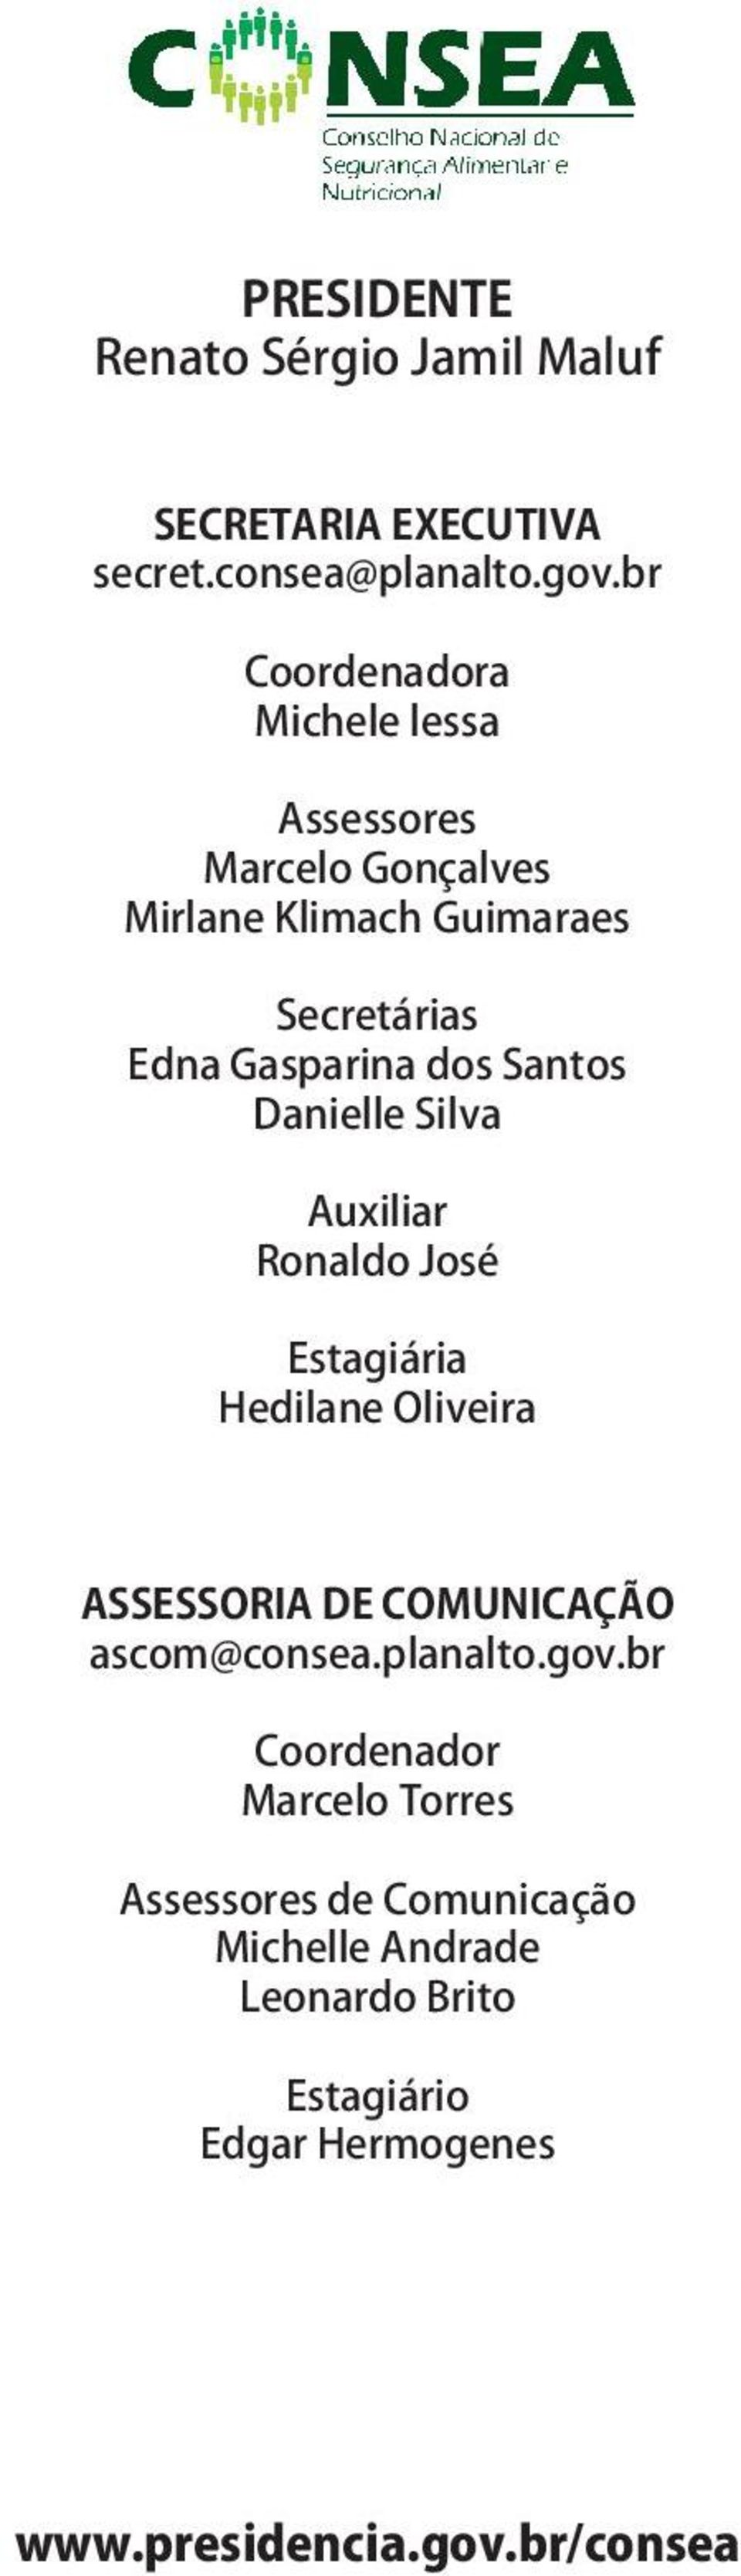 Santos Danielle Silva Auxiliar Ronaldo José Estagiária Hedilane Oliveira ASSESSORIA DE COMUNICAÇÃO ascom@consea.